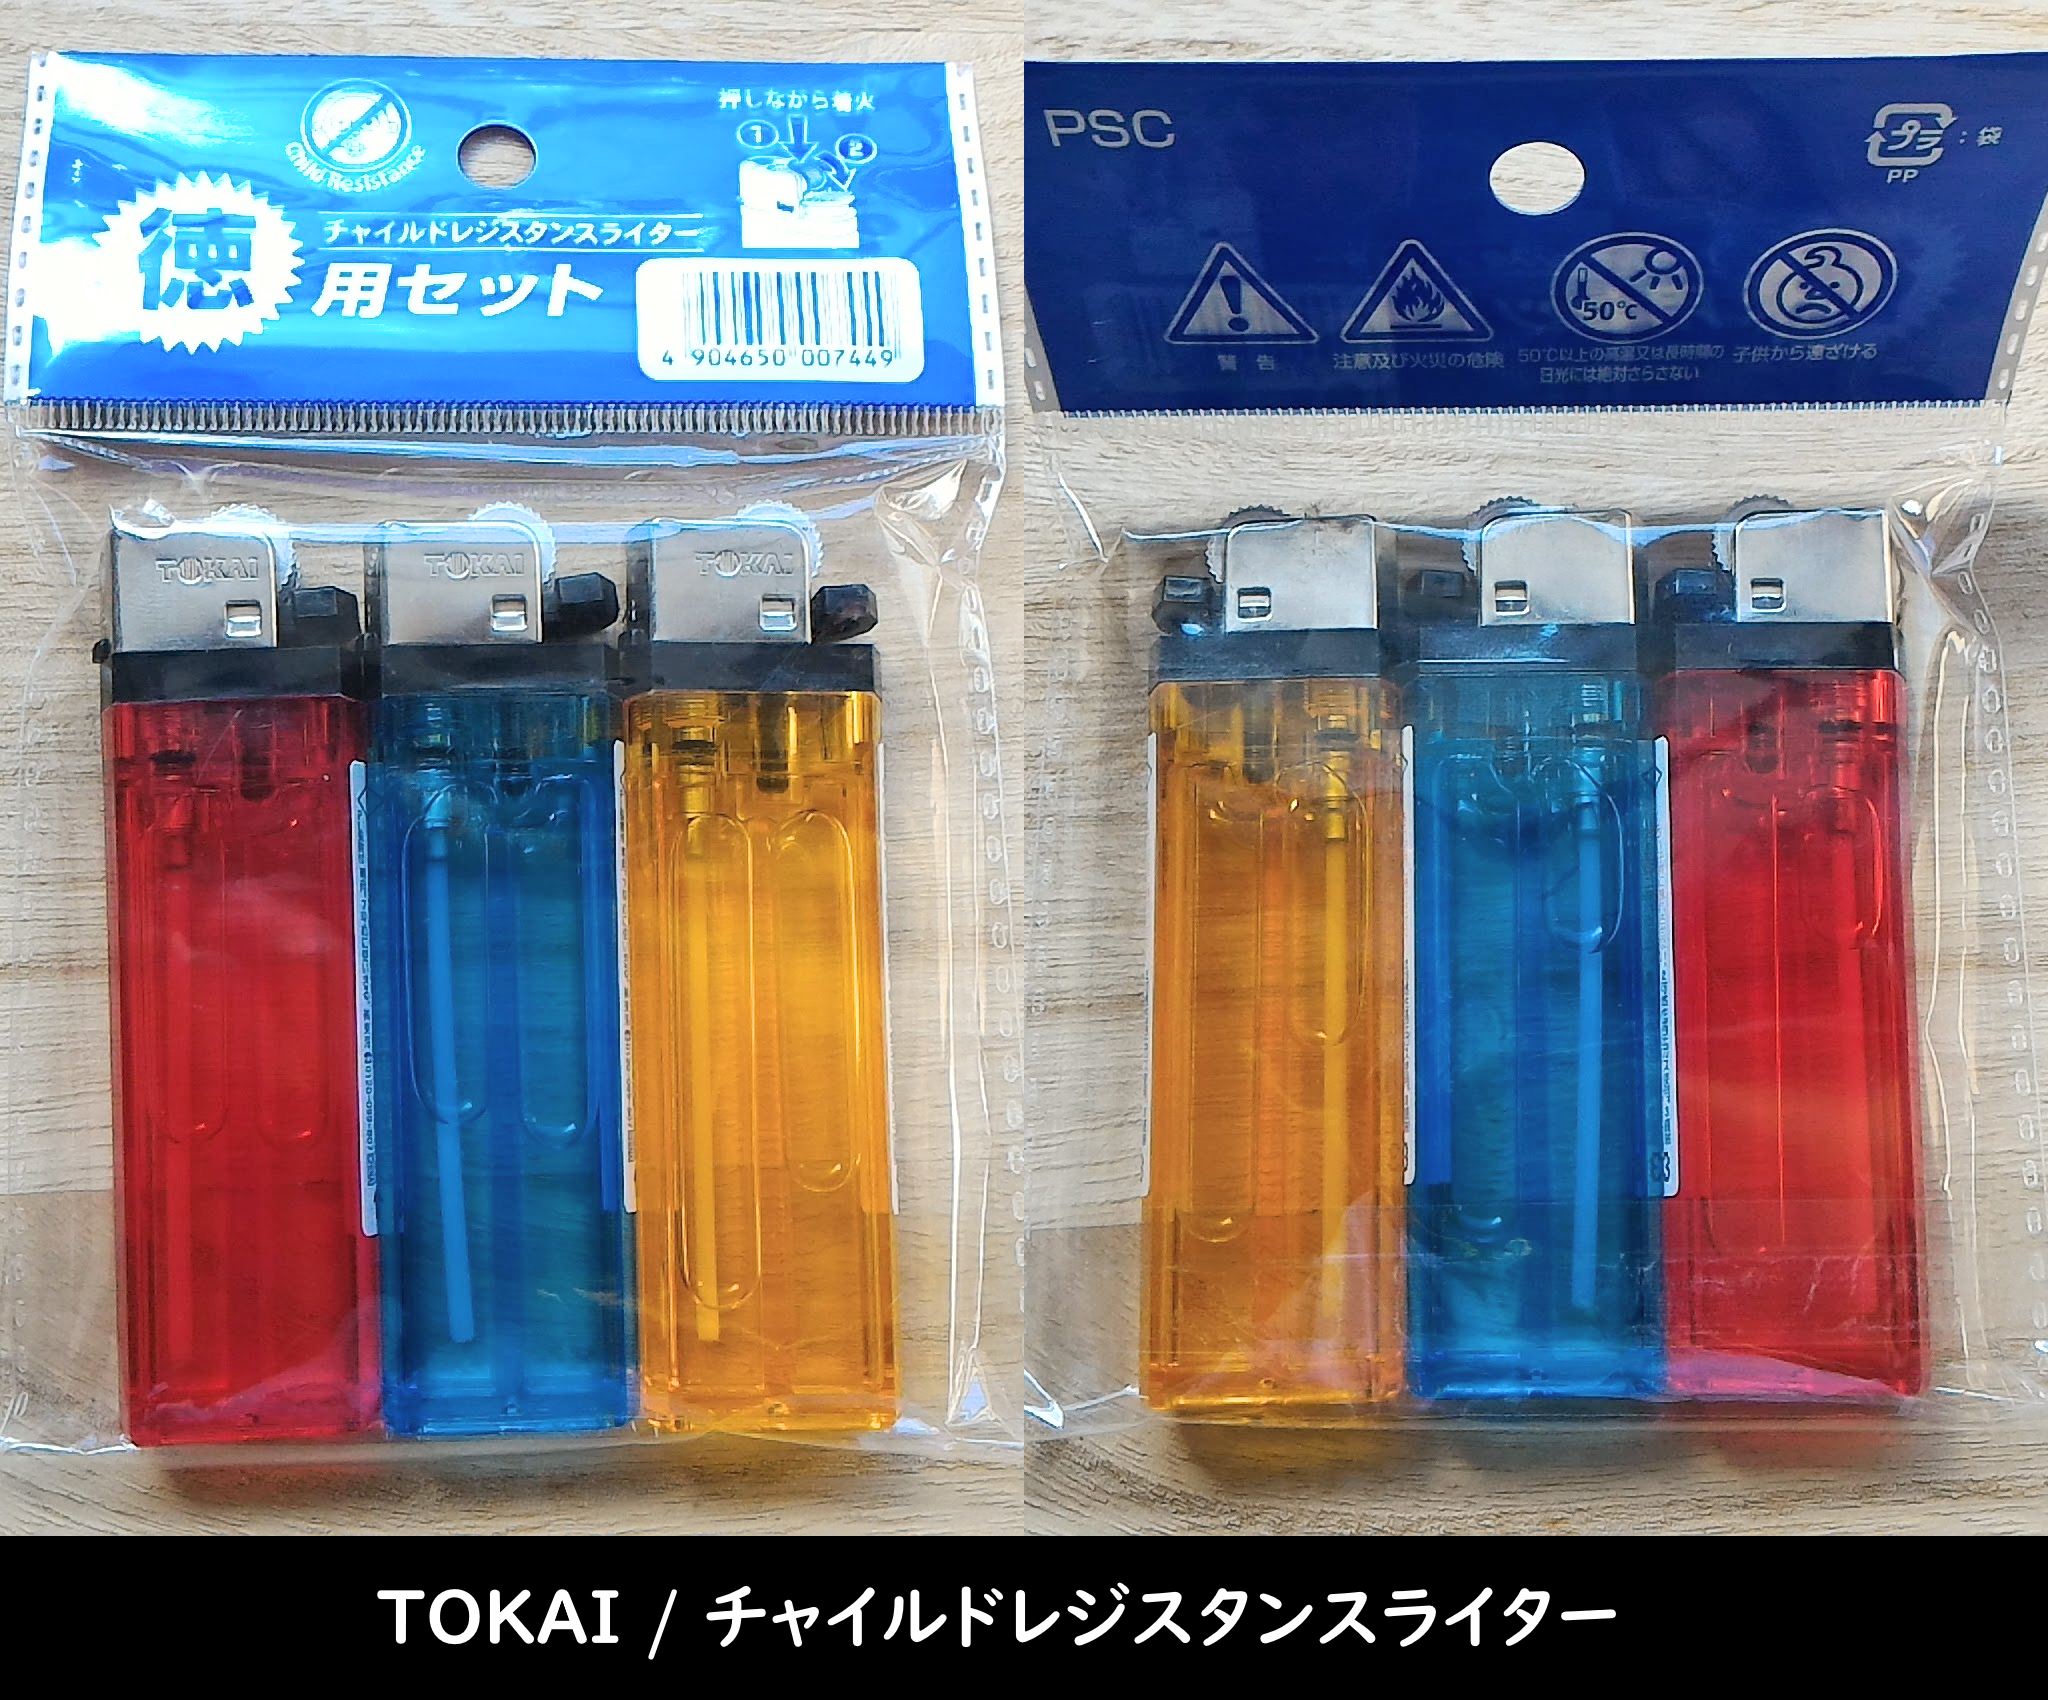 TOKAI / チャイルドレジスタンスライター のパッケージ